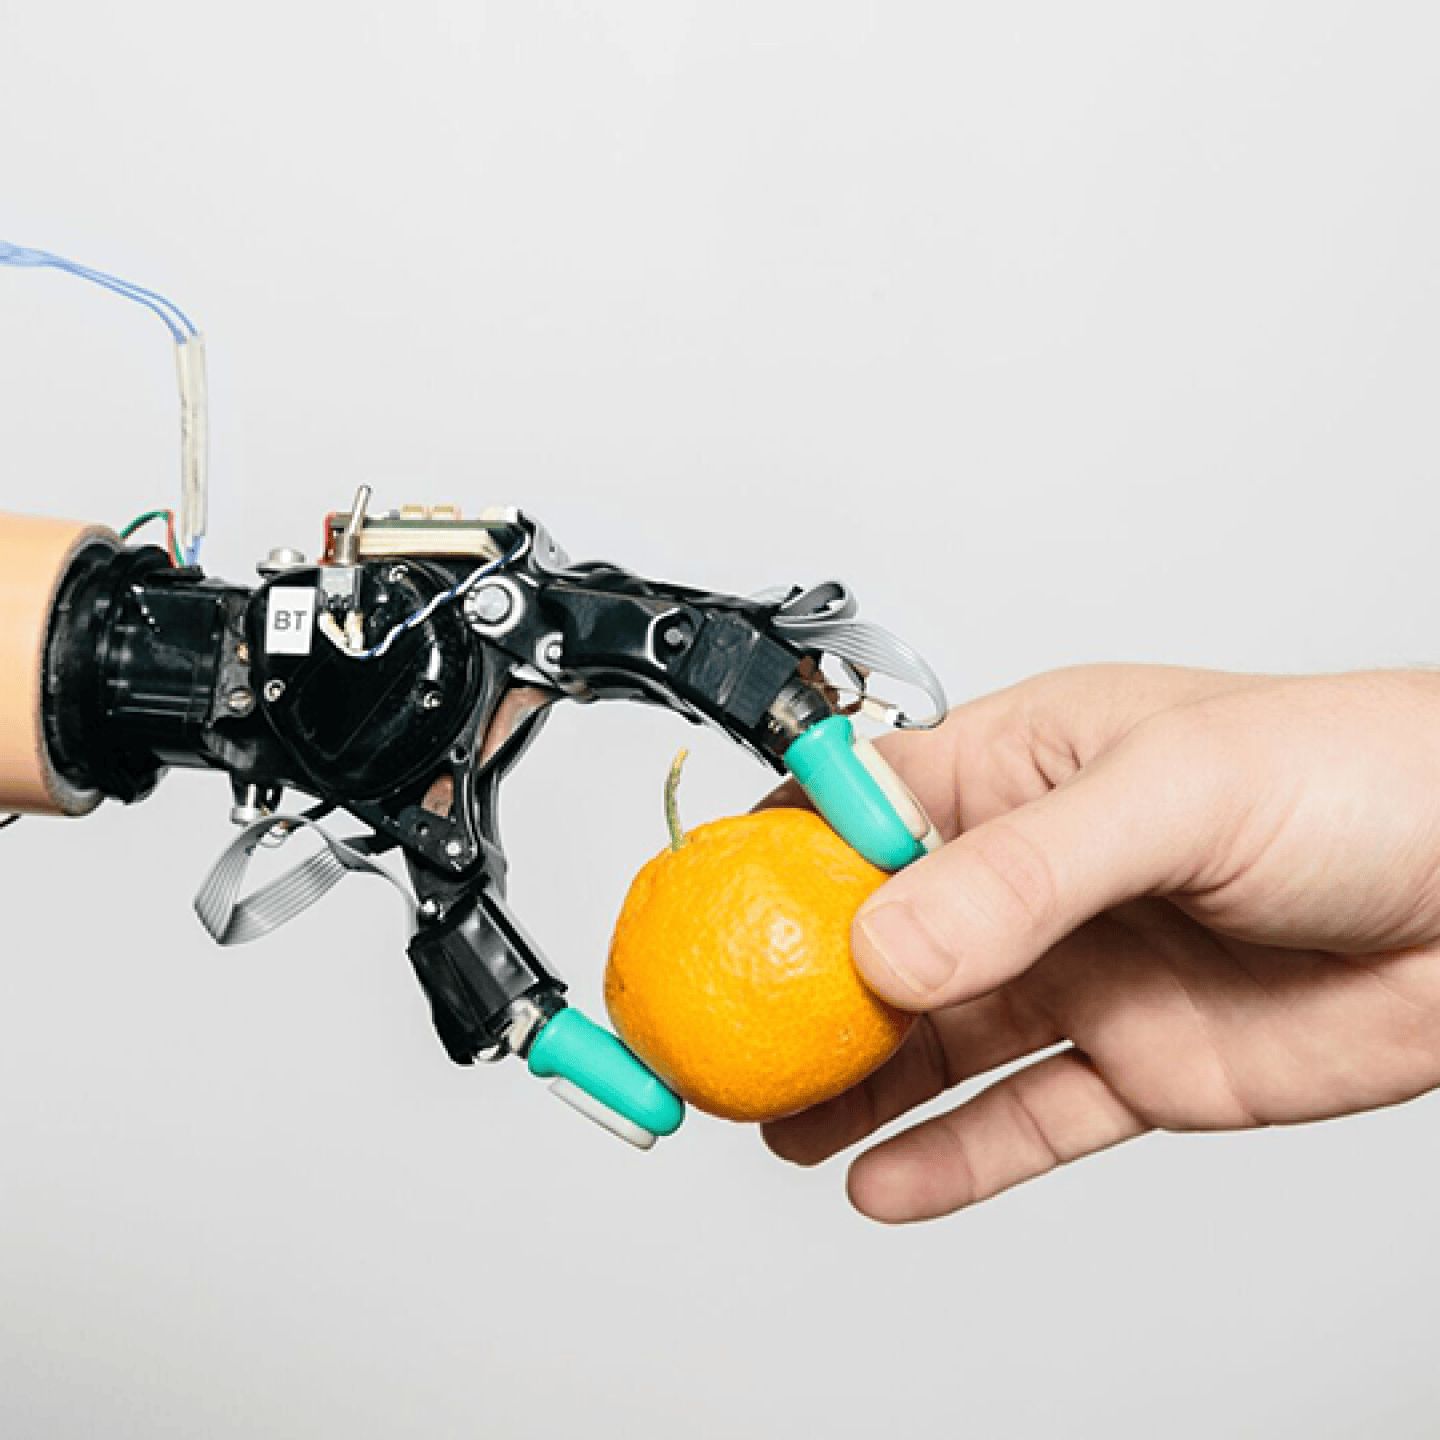 มือหุ่นยนต์กำลังหยิบส้มจากมือมนุษย์